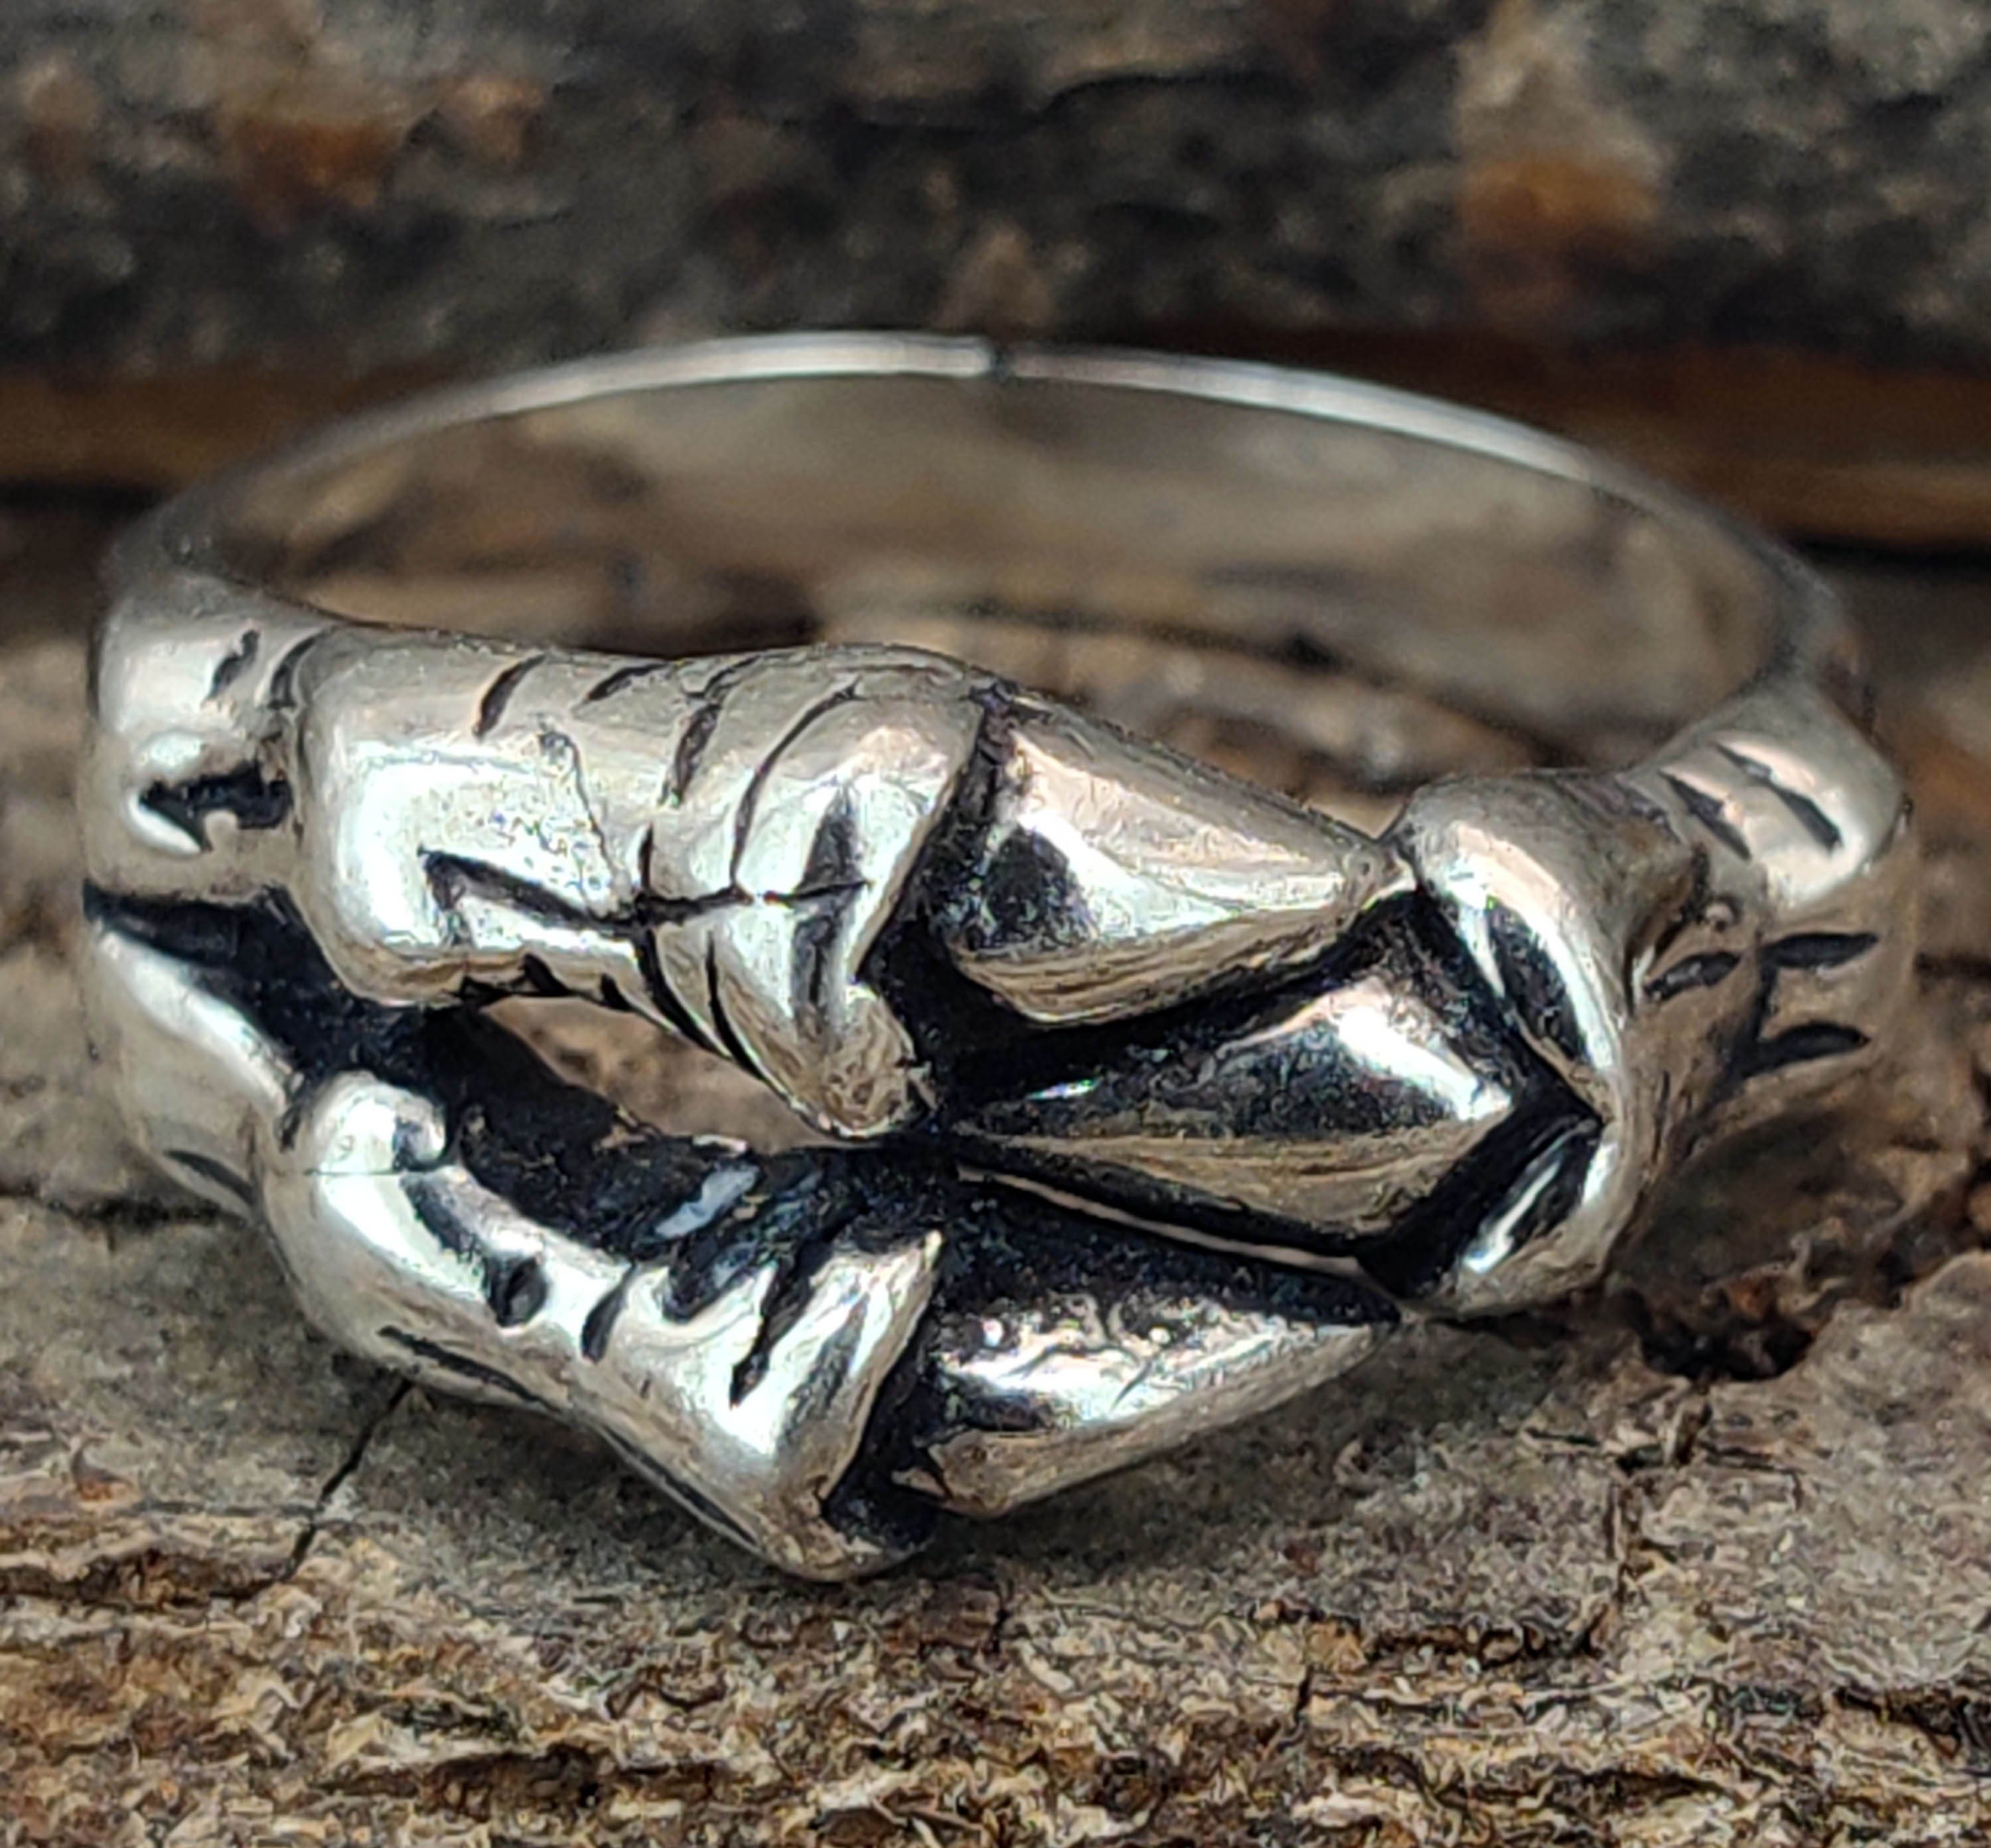 Gr. Drachenkralle, (kr13) 50-74 Silber of Silberring Kiss Ring - Leather